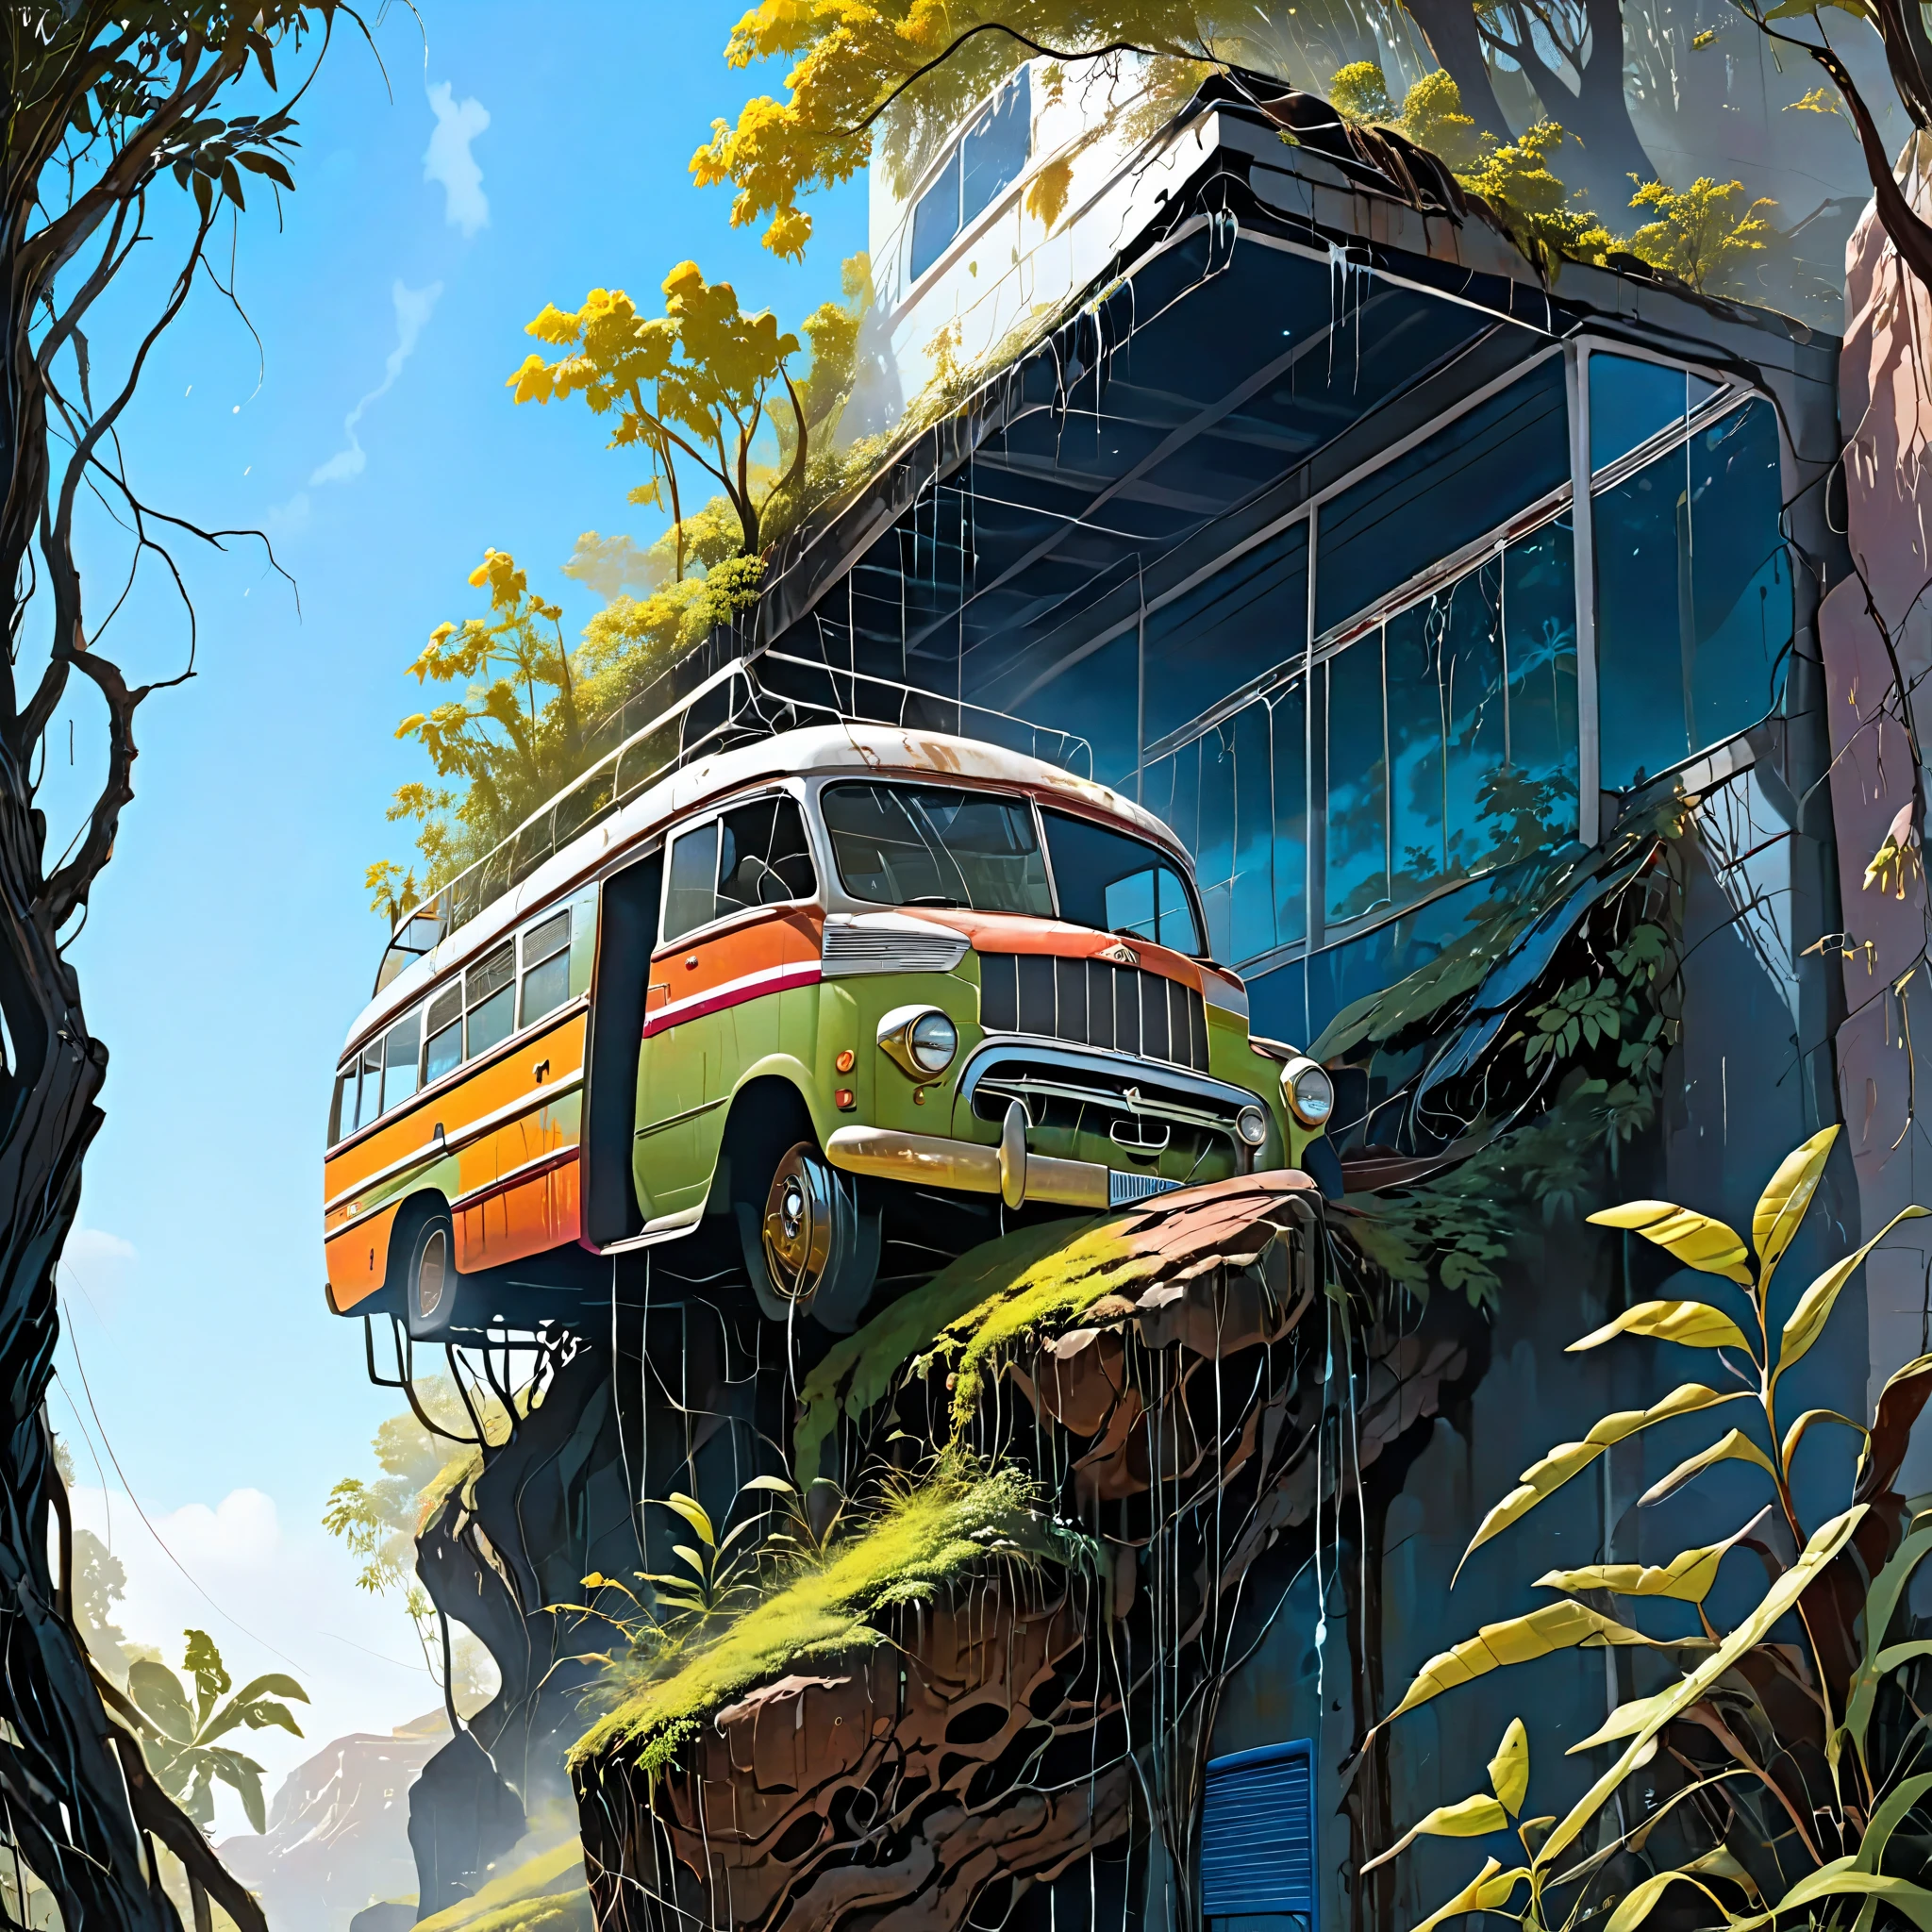 一张用作山顶桥梁的旧生锈巴士的真实照片, 公交车很脏，油漆剥落, 杂草和树木在周围生长, 阴雨天气